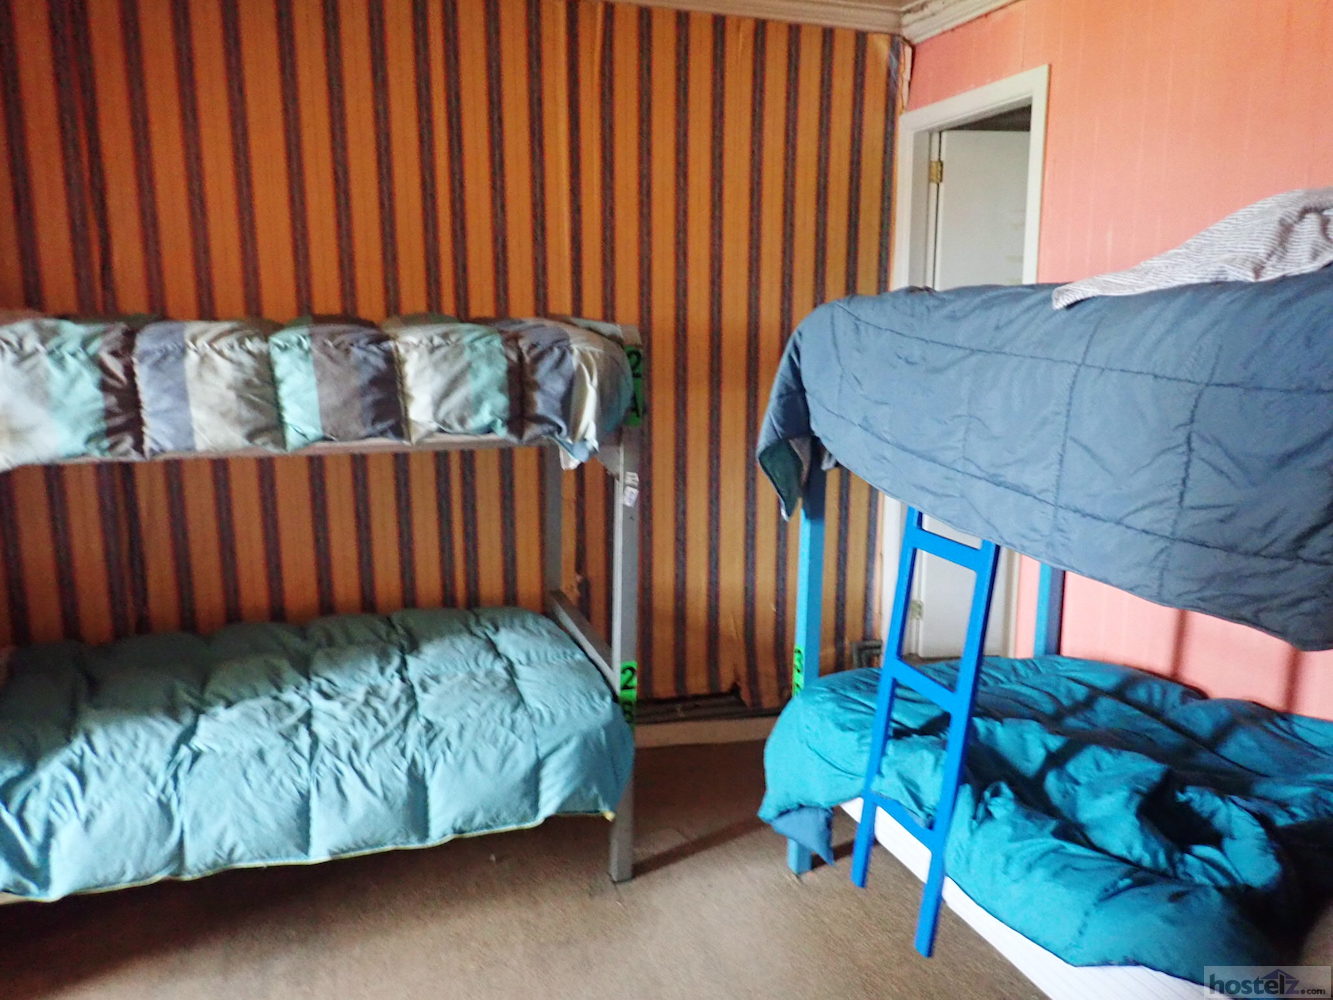 Six-bed dorm